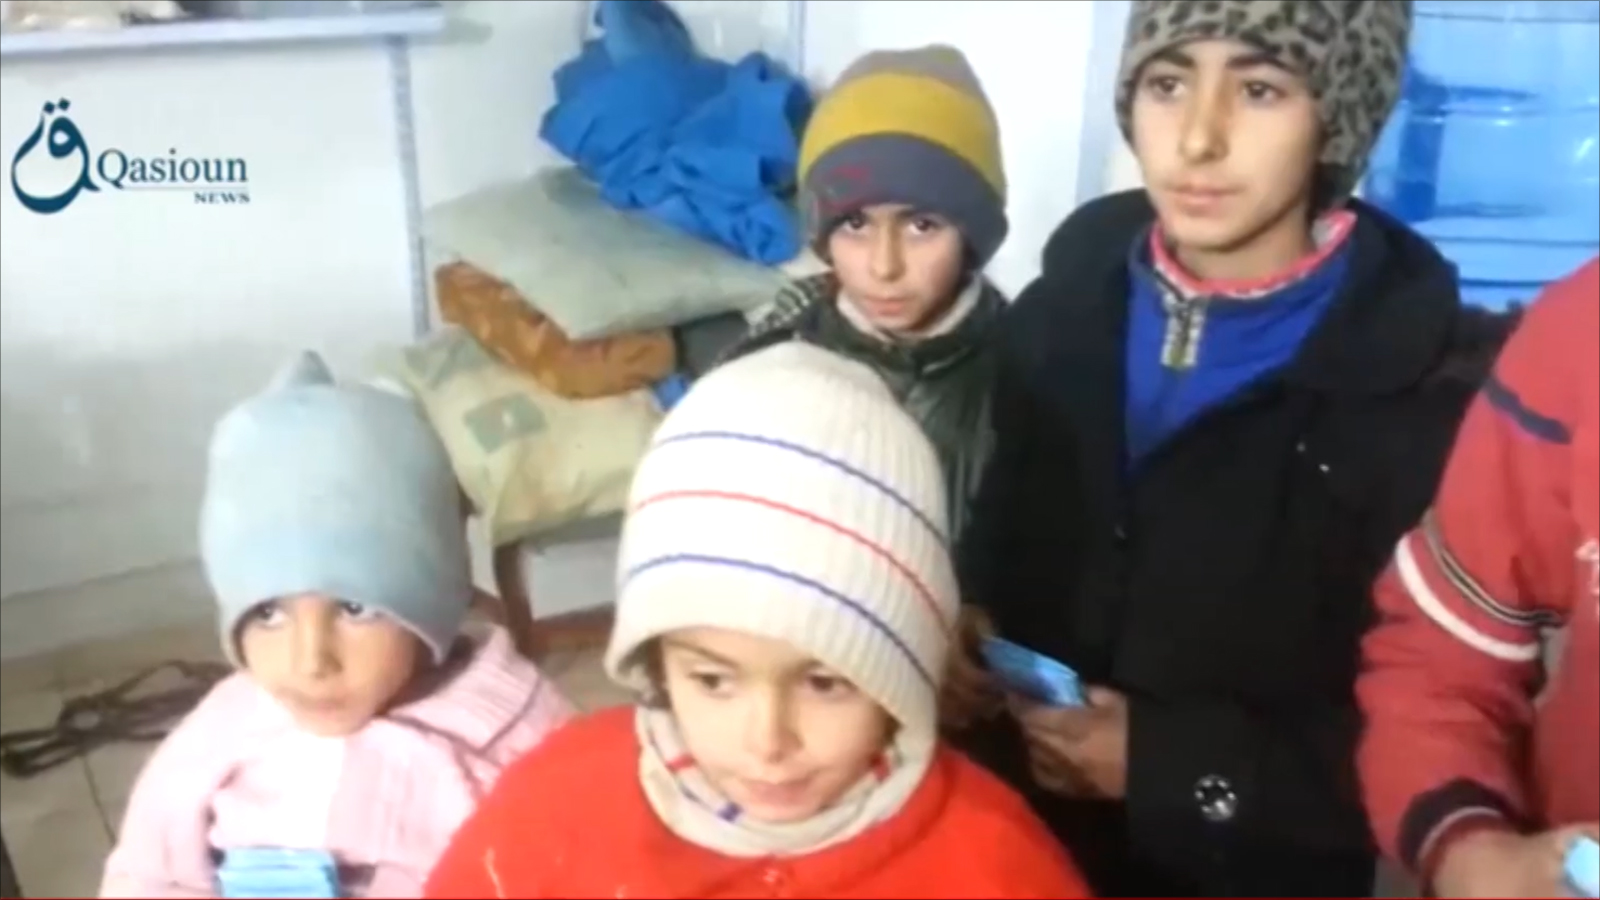 ‪مضايا بانتظار مساعدات حقيقية قبل حدوث الأسوأ‬  (الجزيرة)